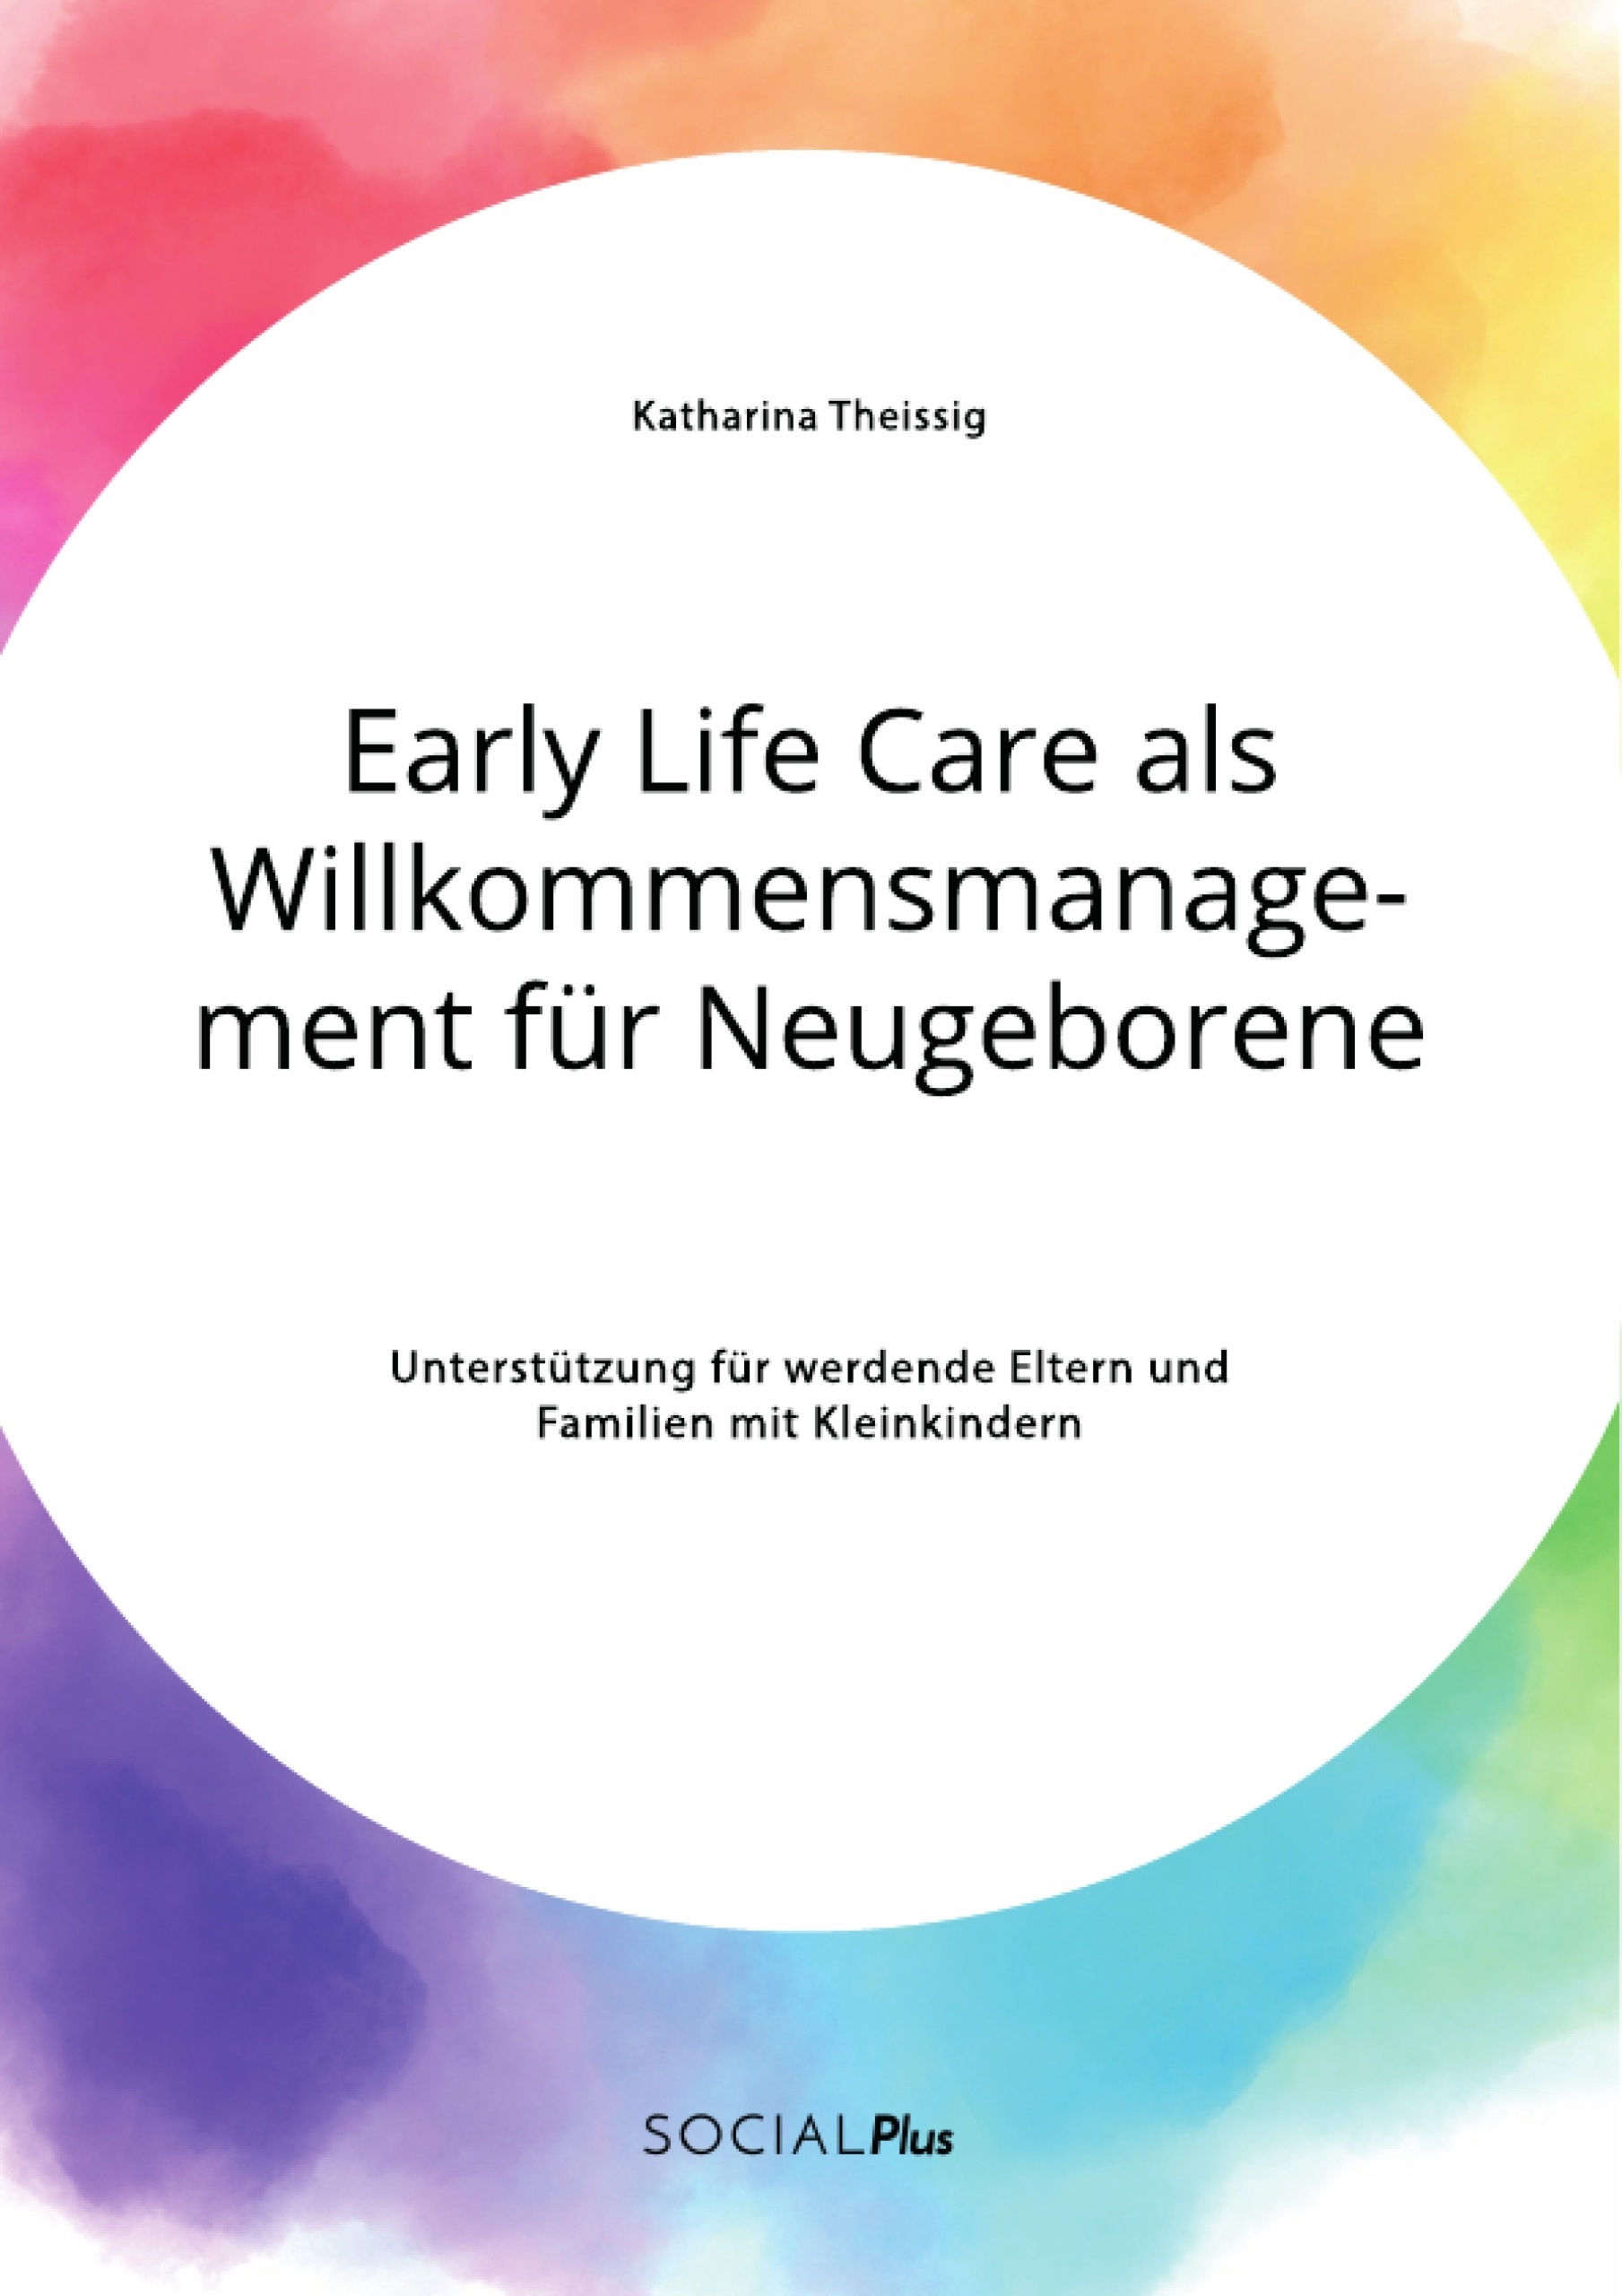 Titel: Early Life Care als Willkommensmanagement für Neugeborene. Unterstützung für werdende Eltern und Familien mit Kleinkindern